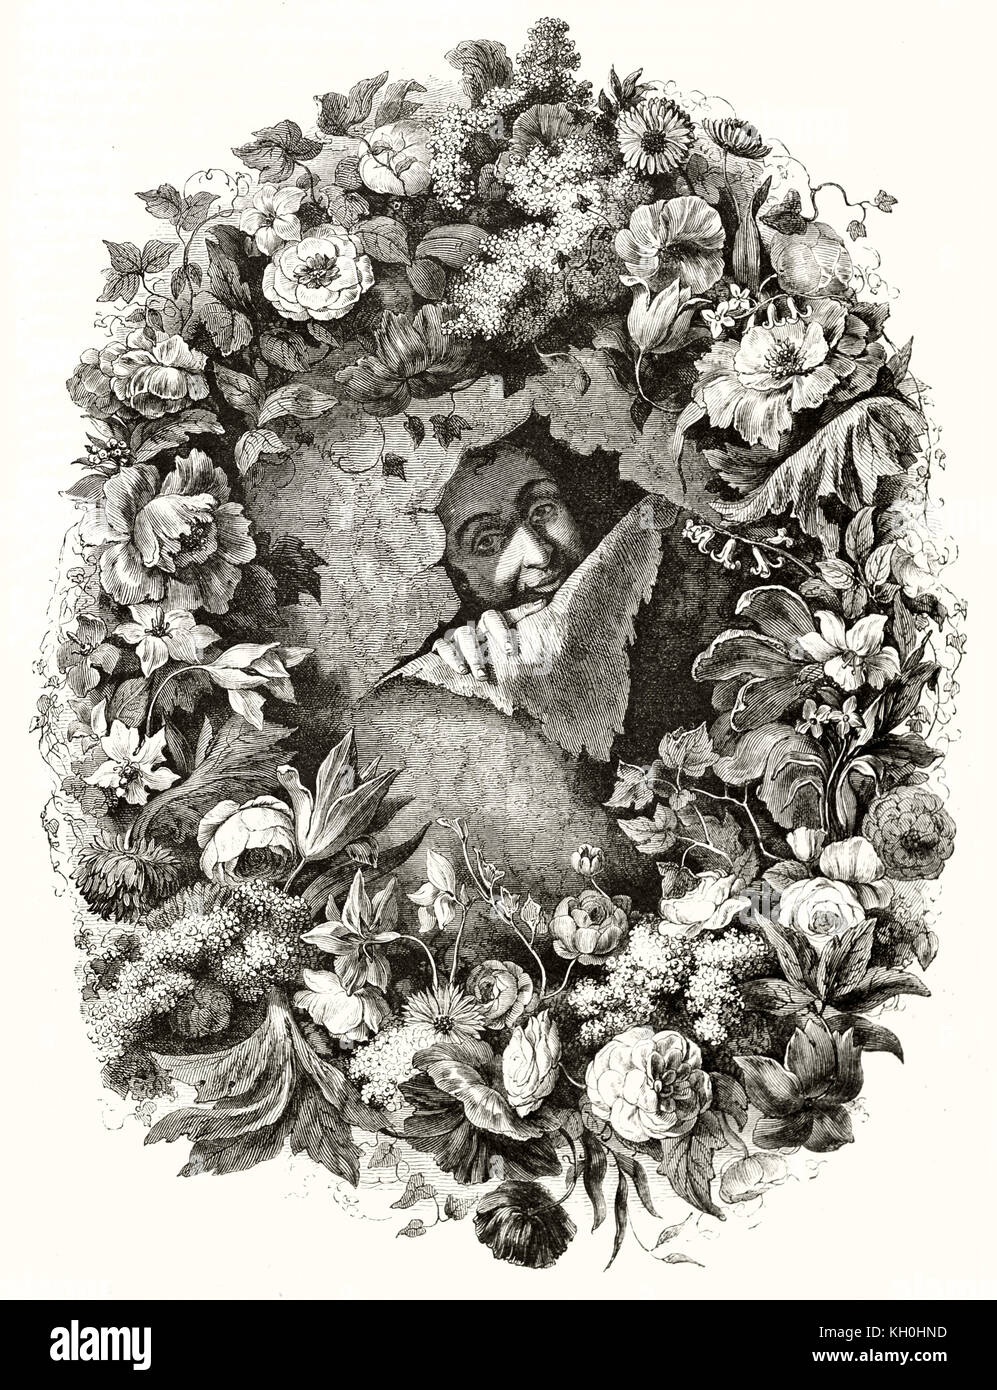 Reproduction of Nicolas Van der Brach self-portrait (flowers painter). Publ. on Magasin Pittoresque, Paris, 1847 Stock Photo